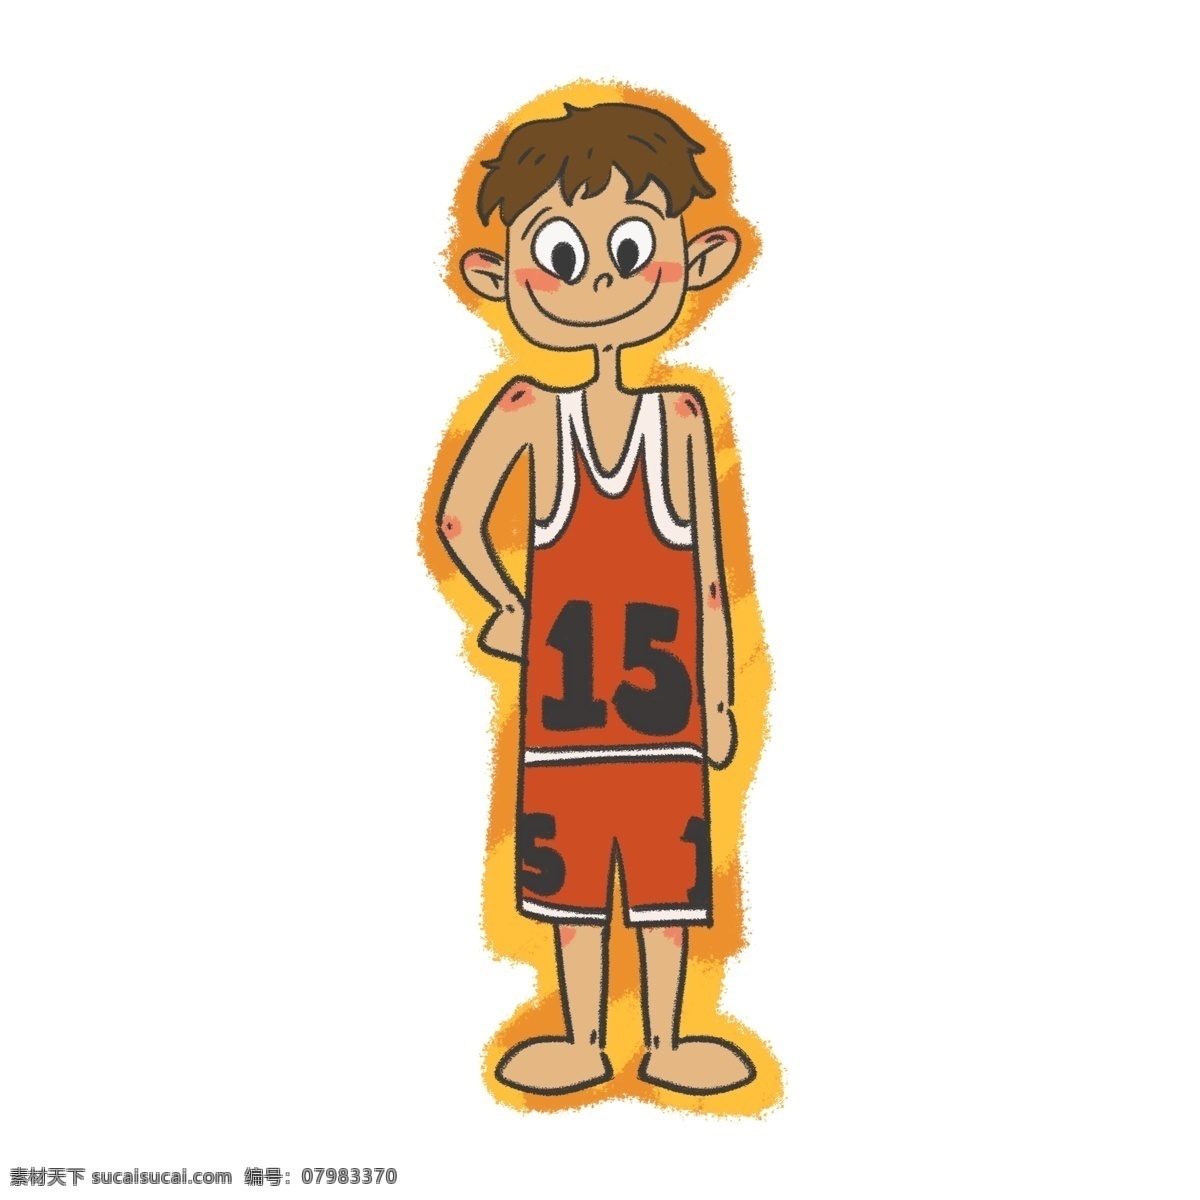 国际 篮球 日 蓝球 运动员 原创 卡通 人物 可爱 手绘 国际篮球日 球员 球服